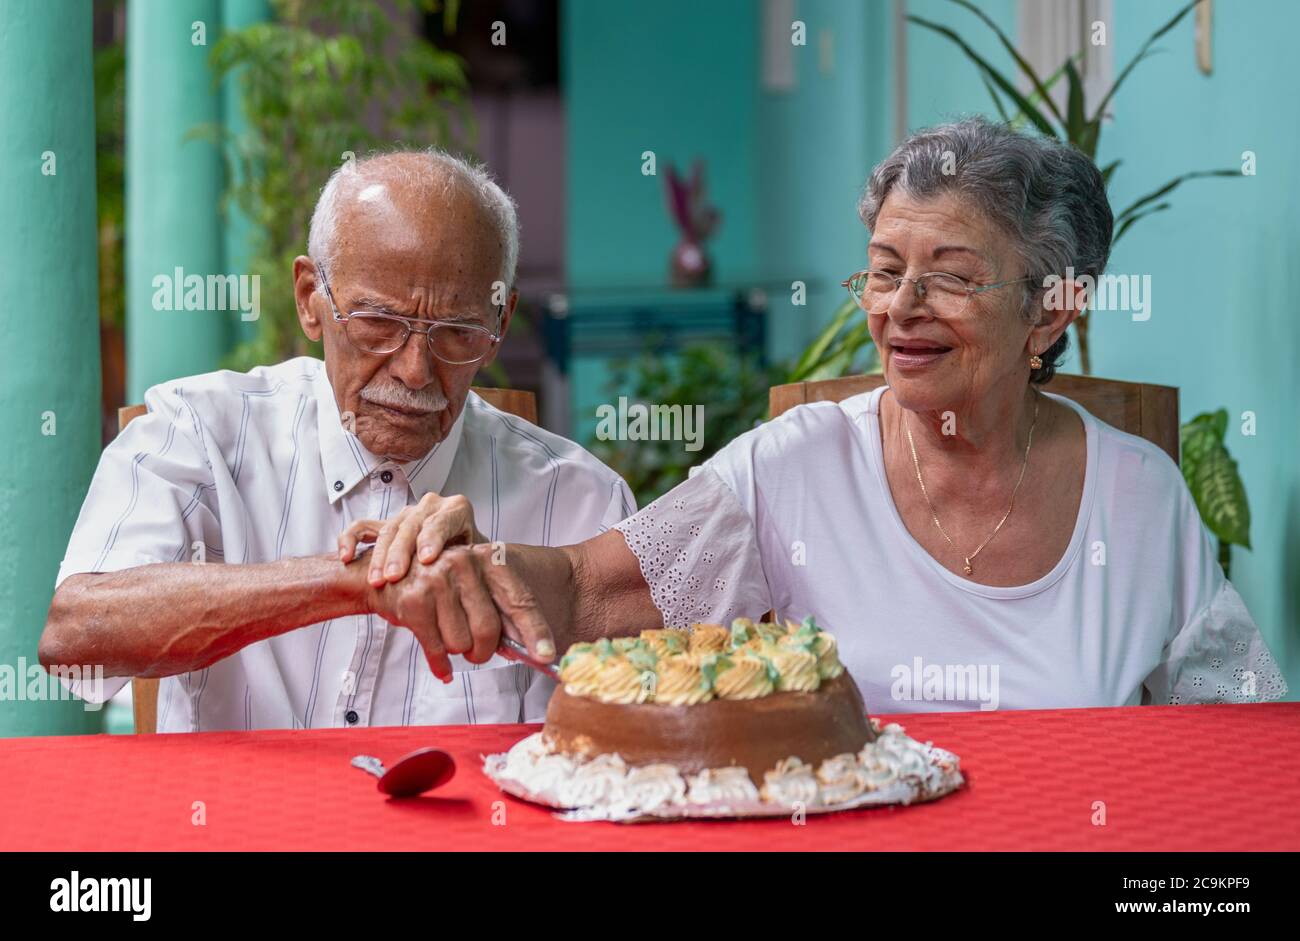 Lächelndes, älteres Paar, das sich gegenseitig einen Kuchen schneidet Stockfoto